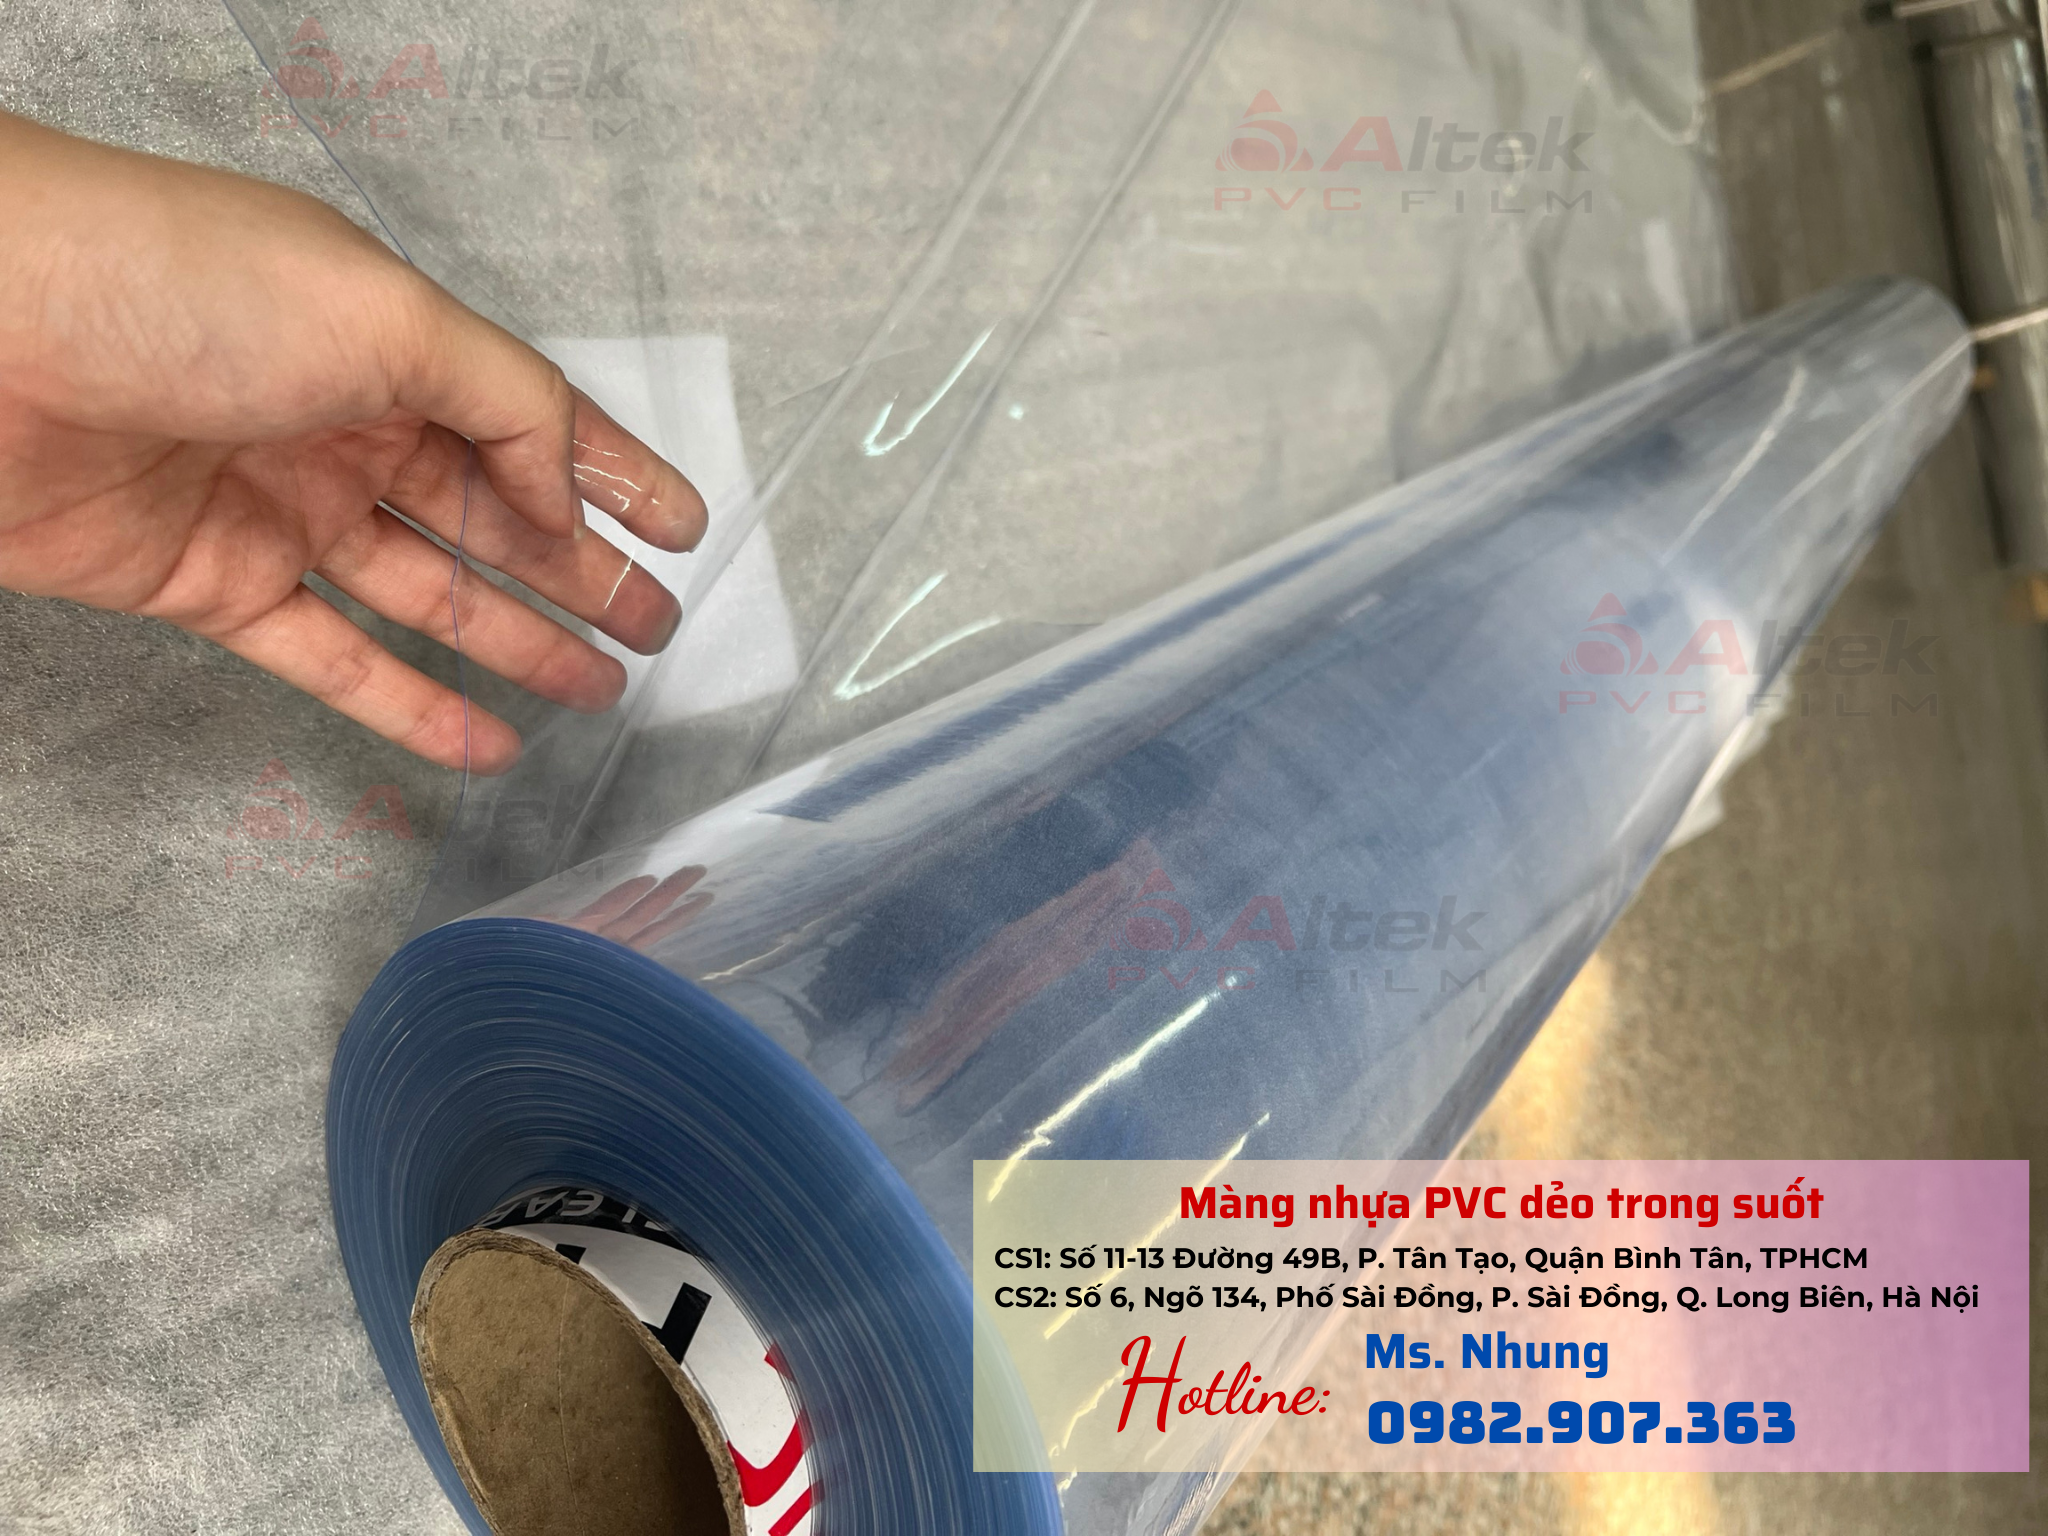 Màng nhựa PVC dẻo trong suốt giá gốc nhà xưởng